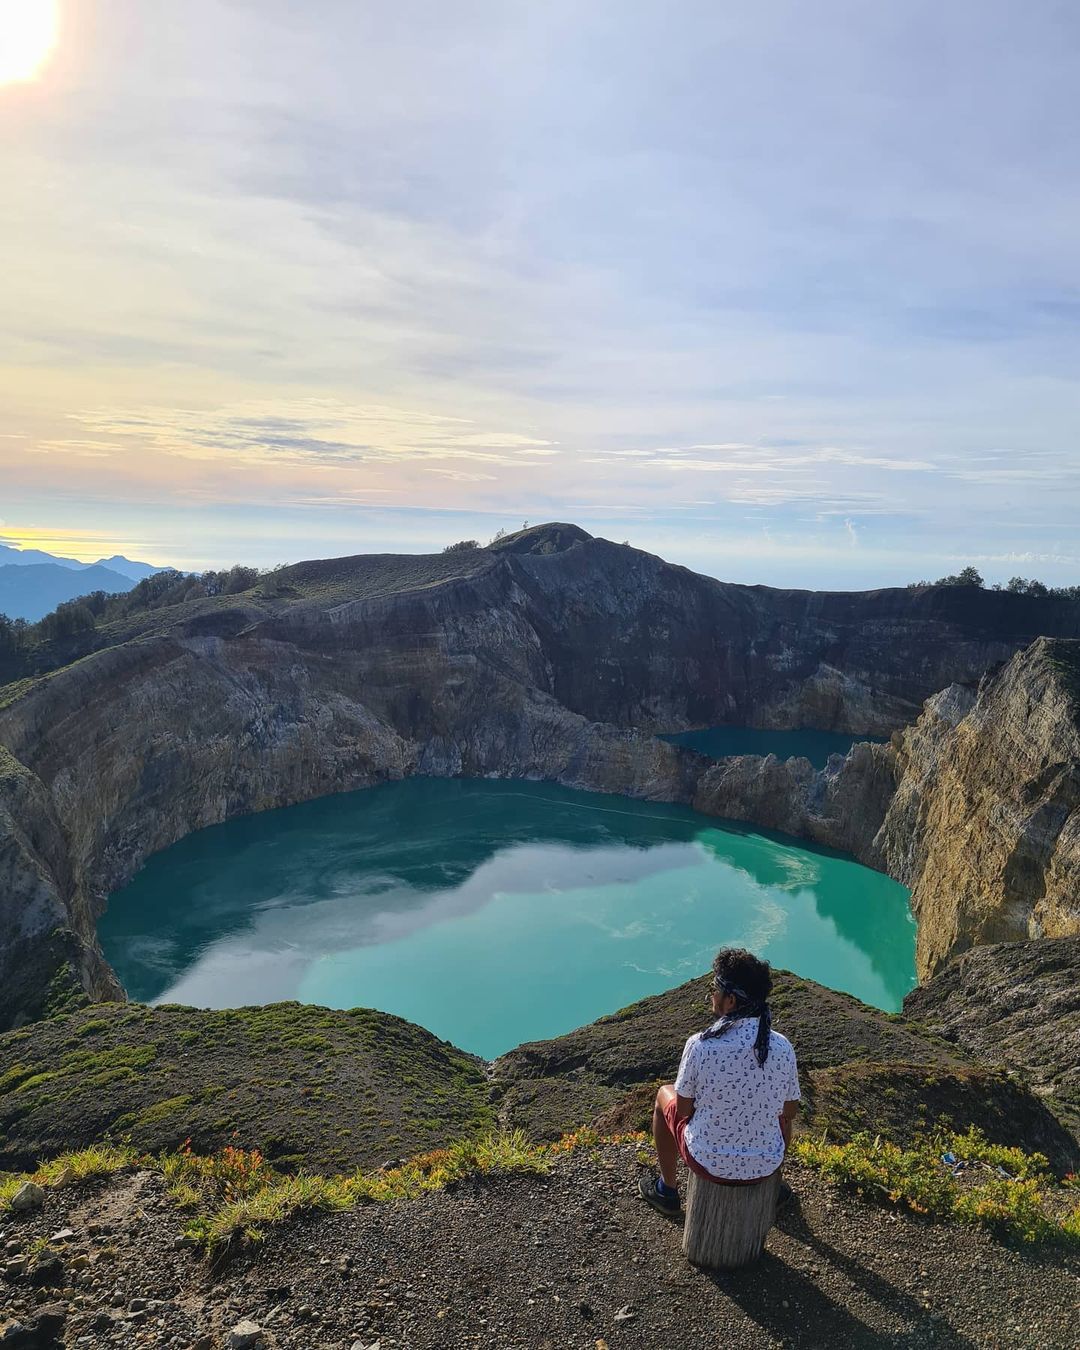 lakes in indonesia - kelimutu crater lakes